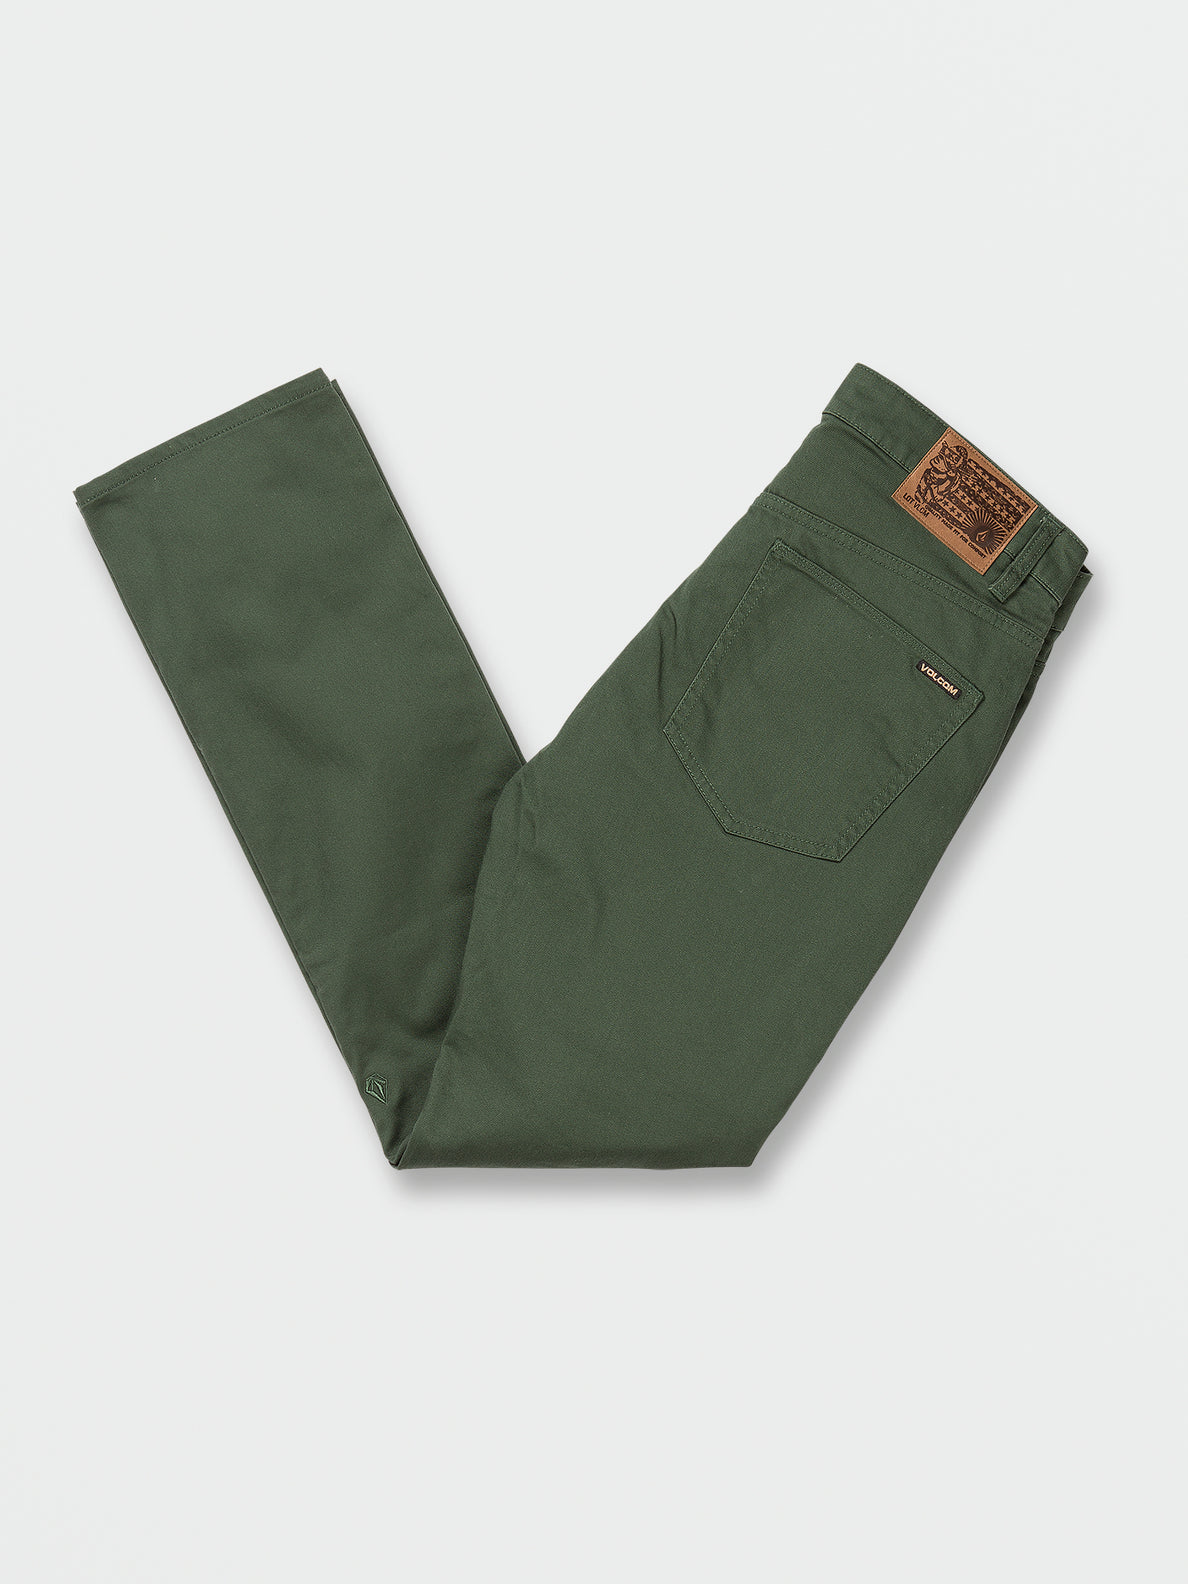 V Vorta 5 Pocket Pants - Trekking Green